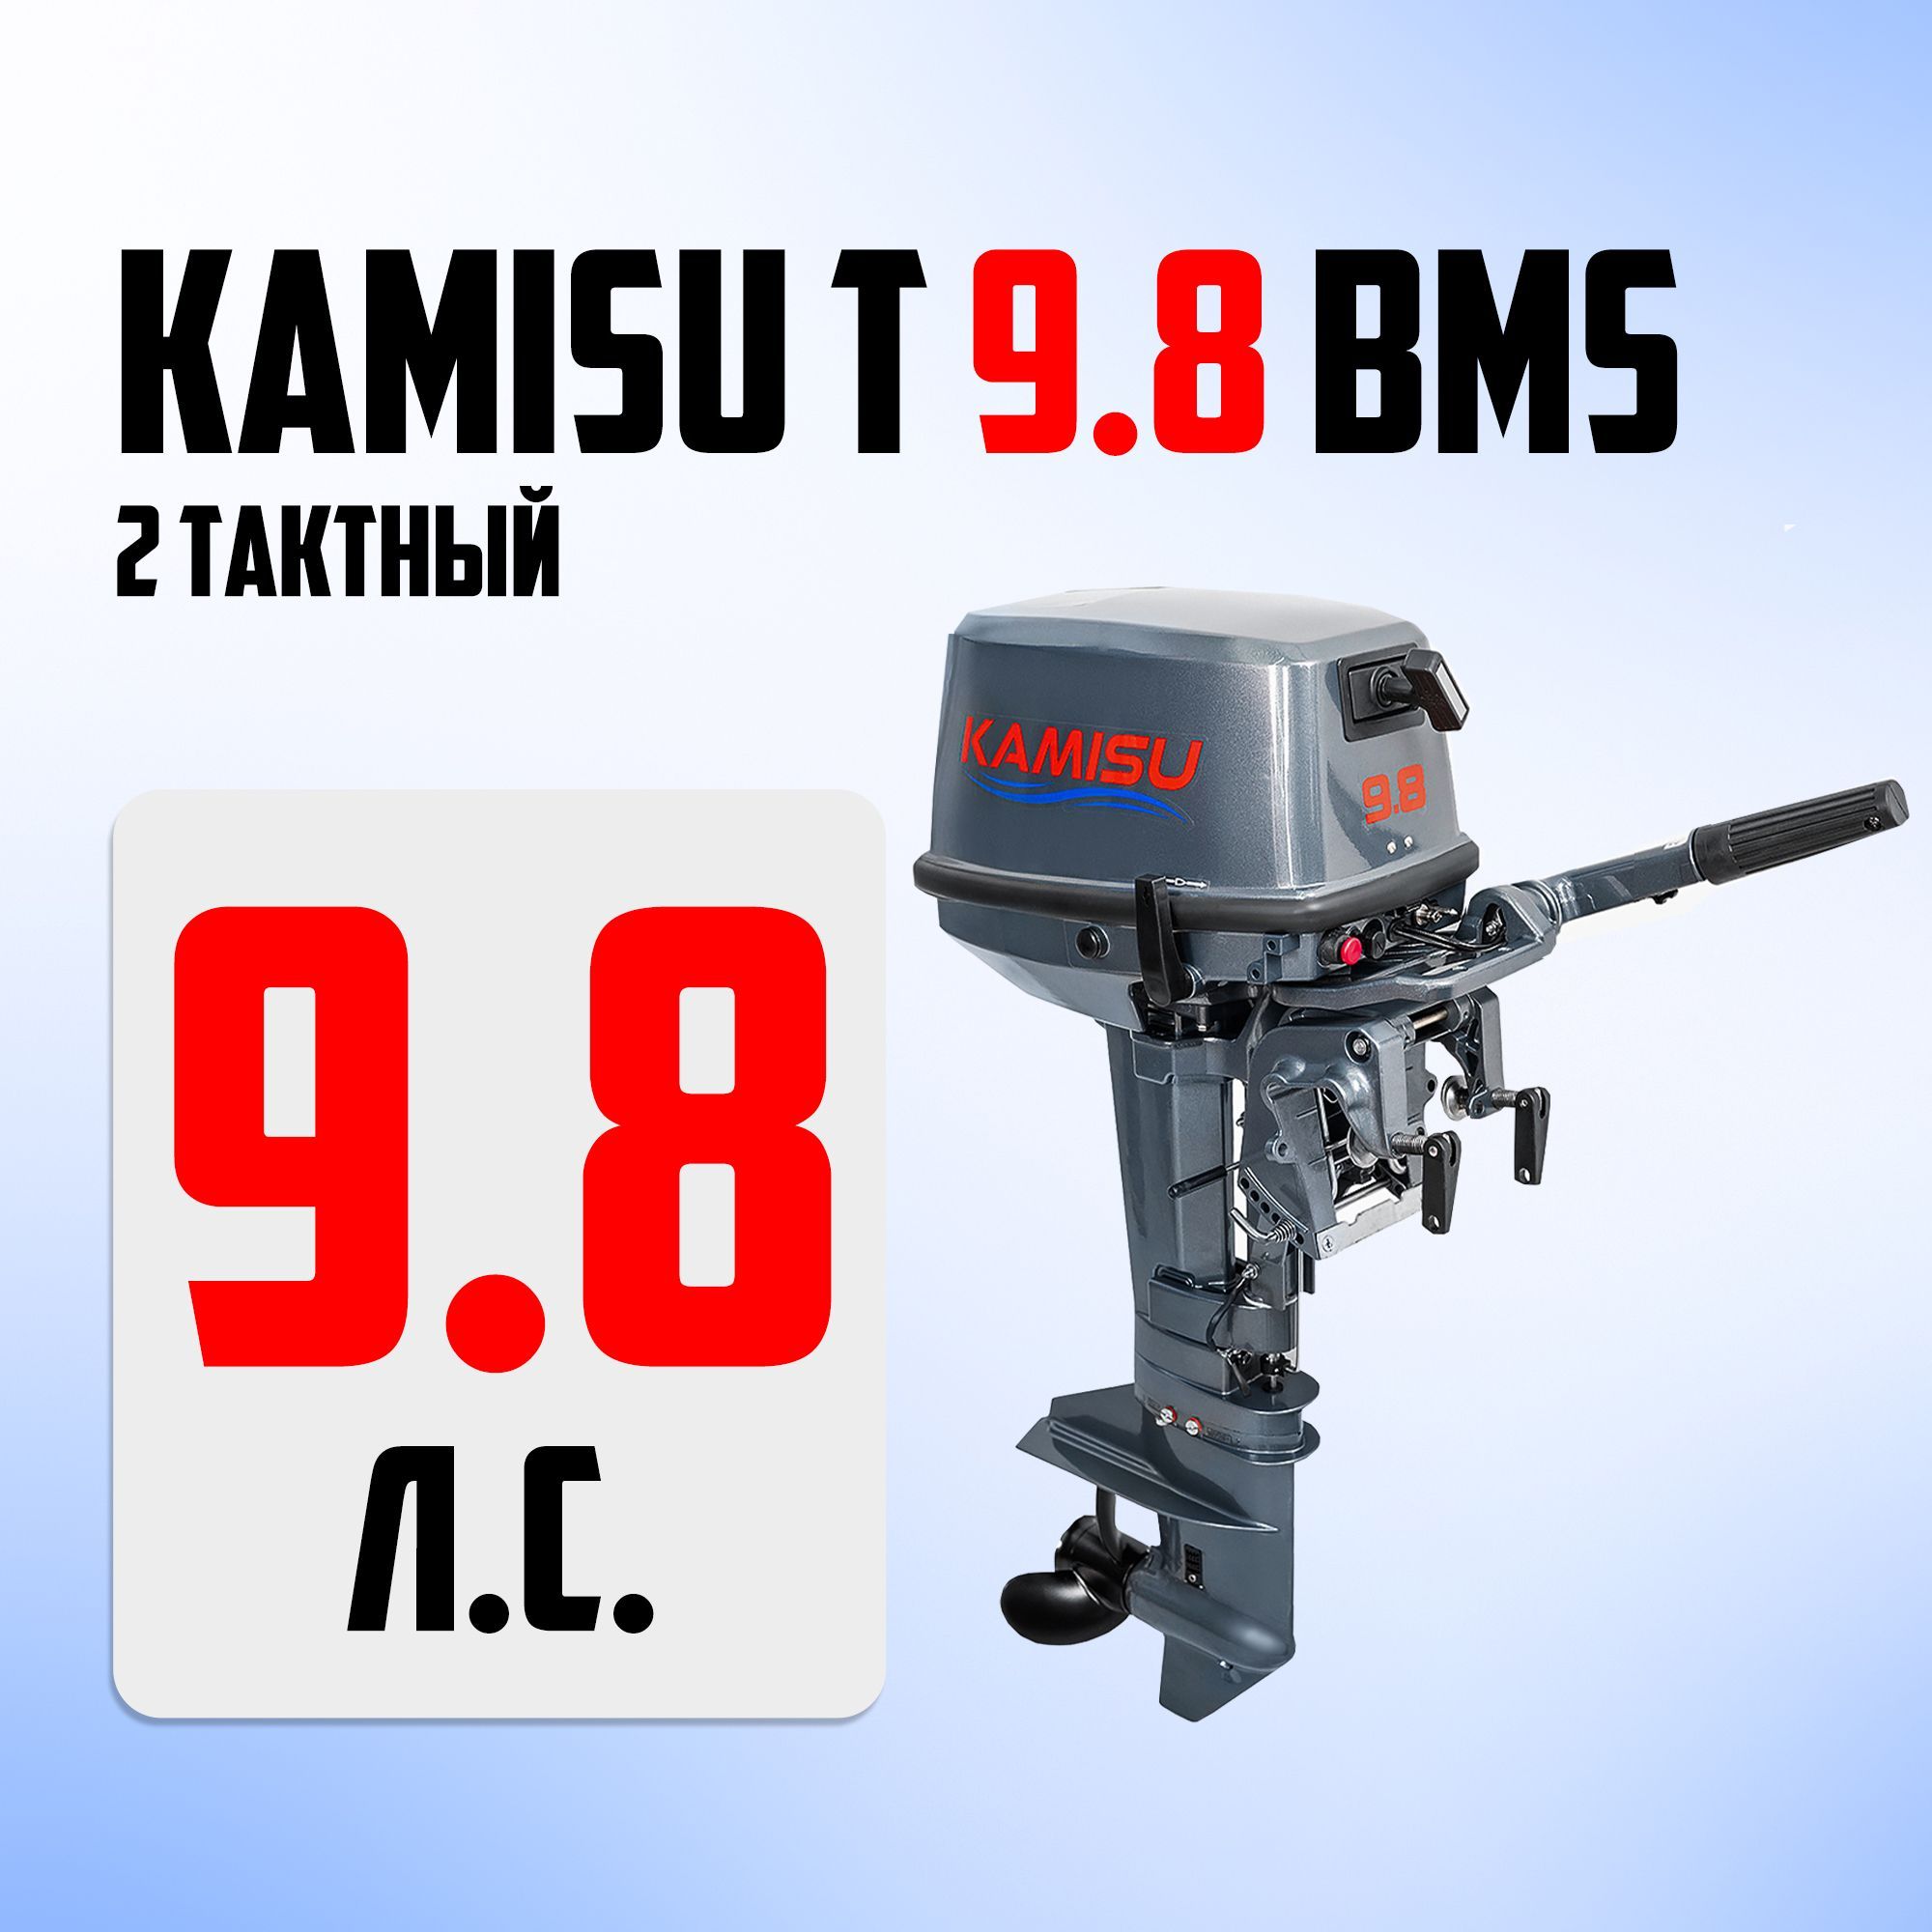 Мотор камису 9.8. Kamisu лодочные моторы производитель. Yamabisi 30. Yamabisi t5bms PNG.